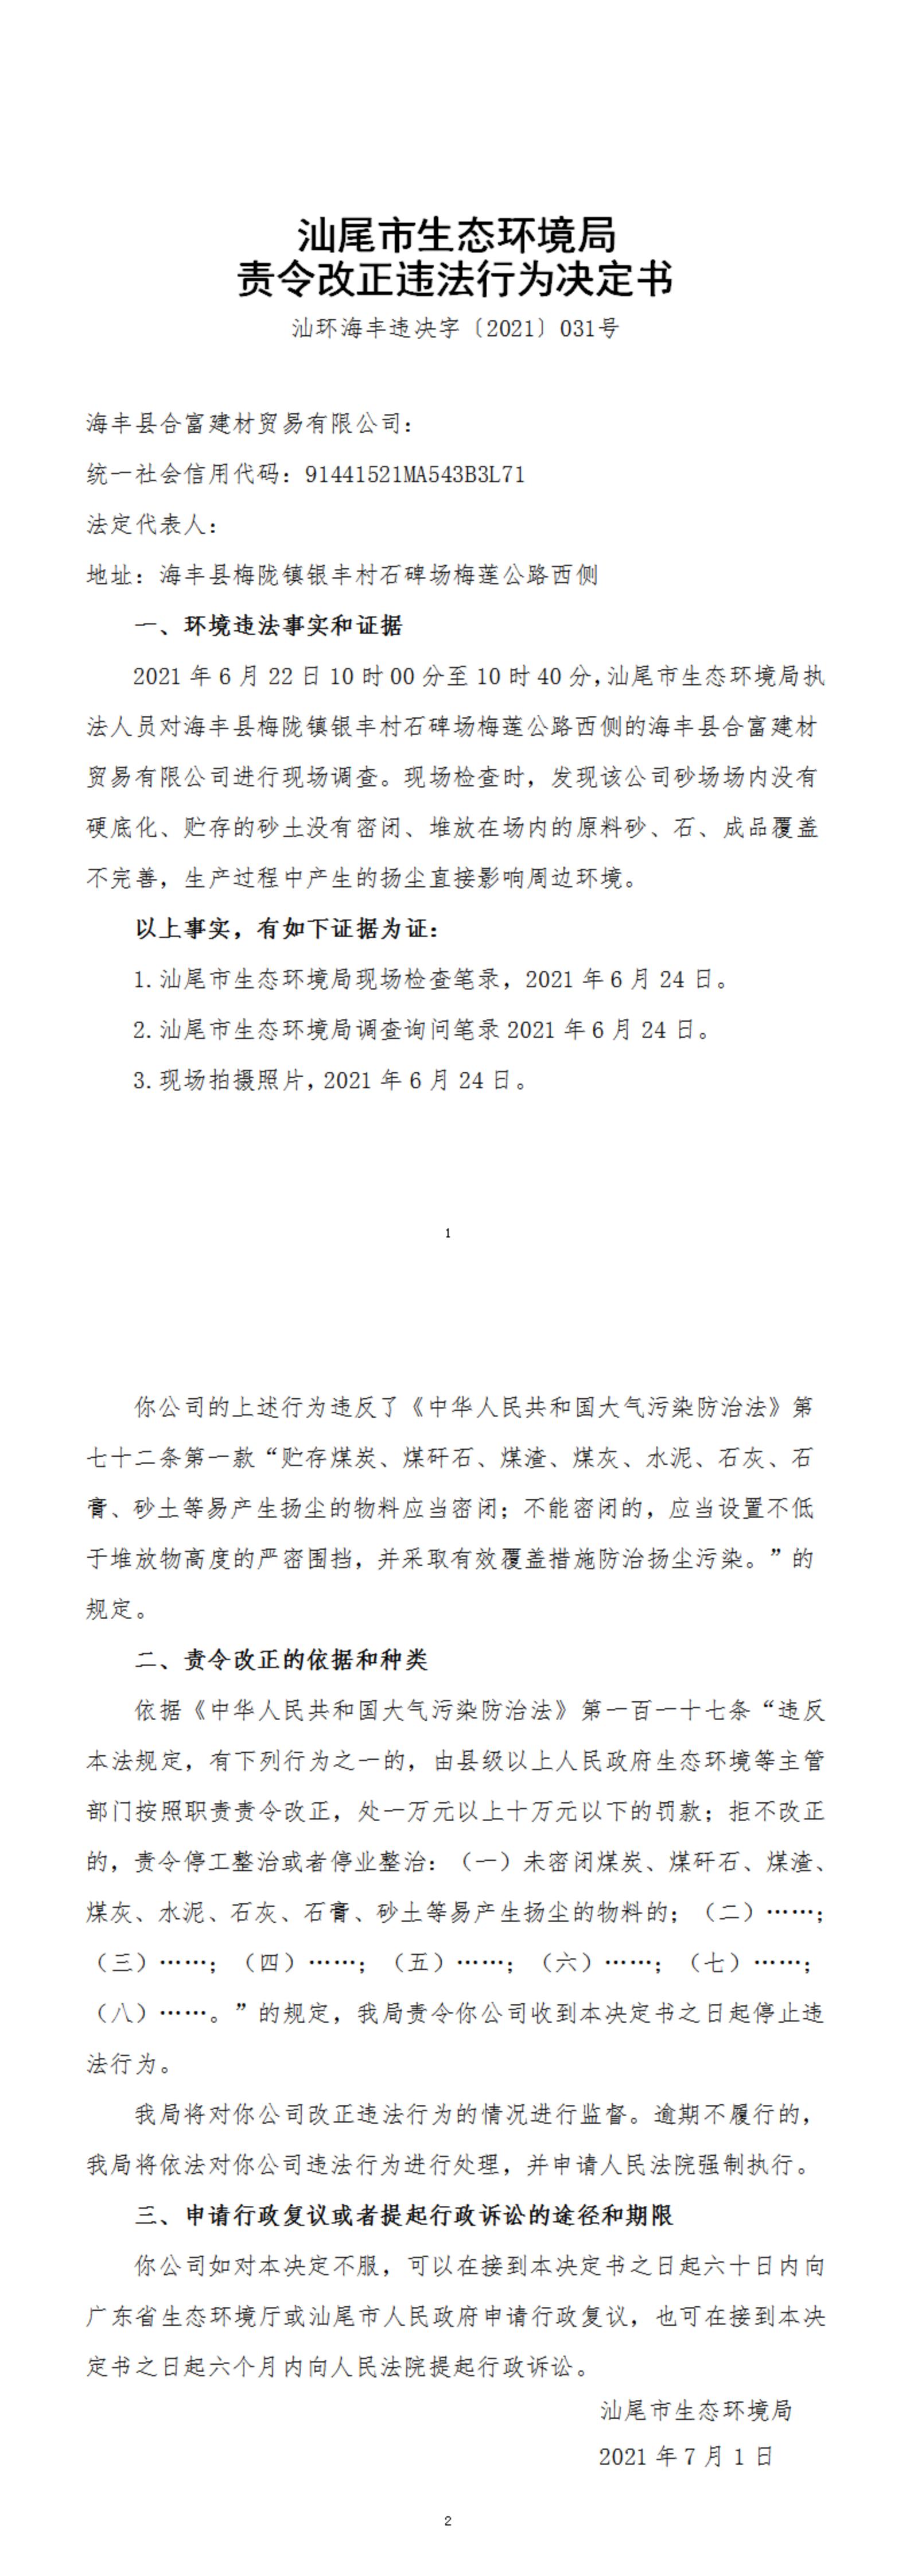 海丰县合富建材贸易有限公司决定书_20220105163224_00.jpg